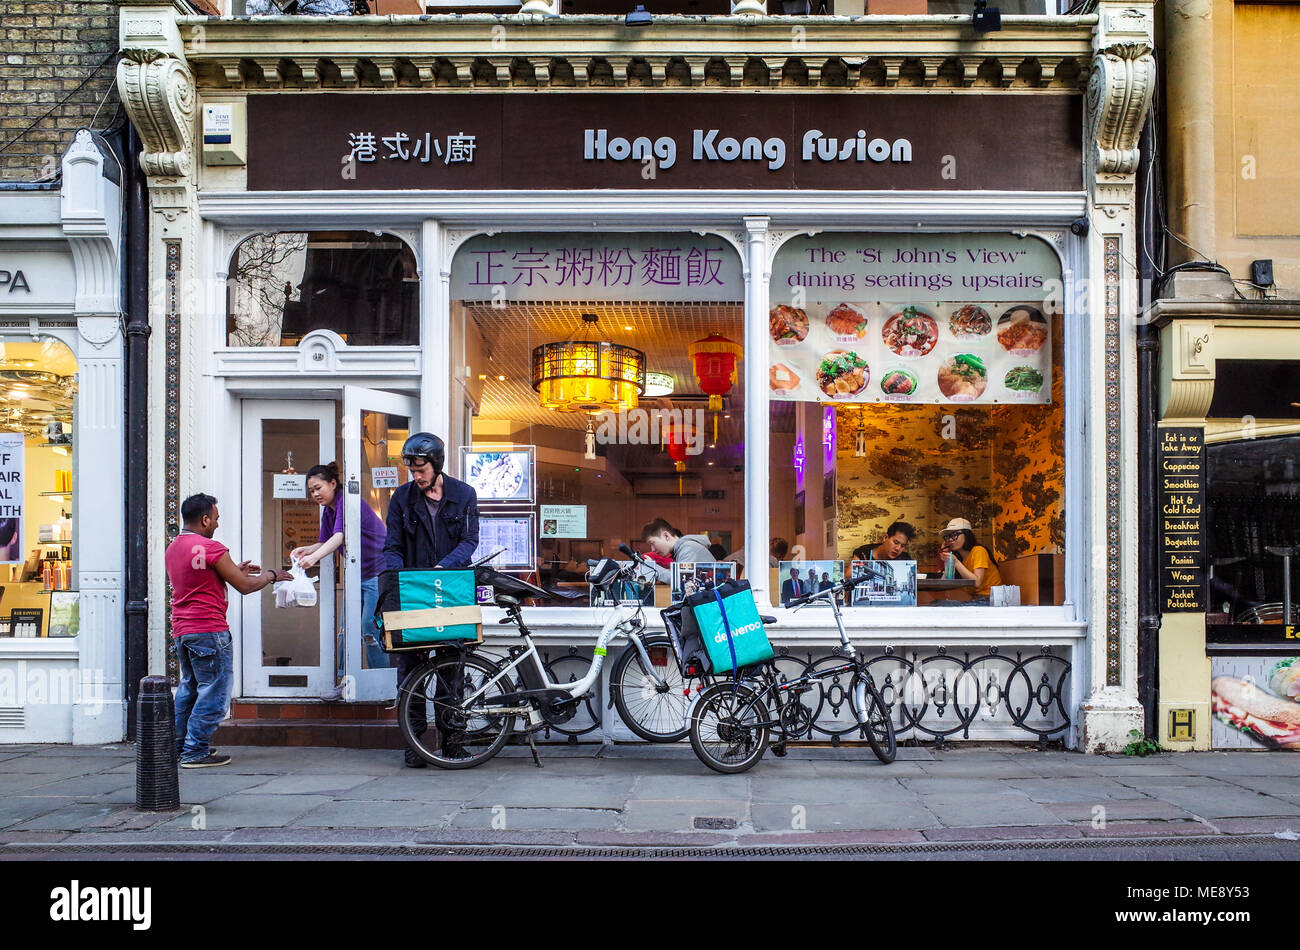 Deliveroo Lebensmittel-lieferservice Kuriere holen Sie Mahlzeiten zum Mitnehmen aus dem Hong Kong Fusion Restaurant im Zentrum von Cambridge Großbritannien Stockfoto